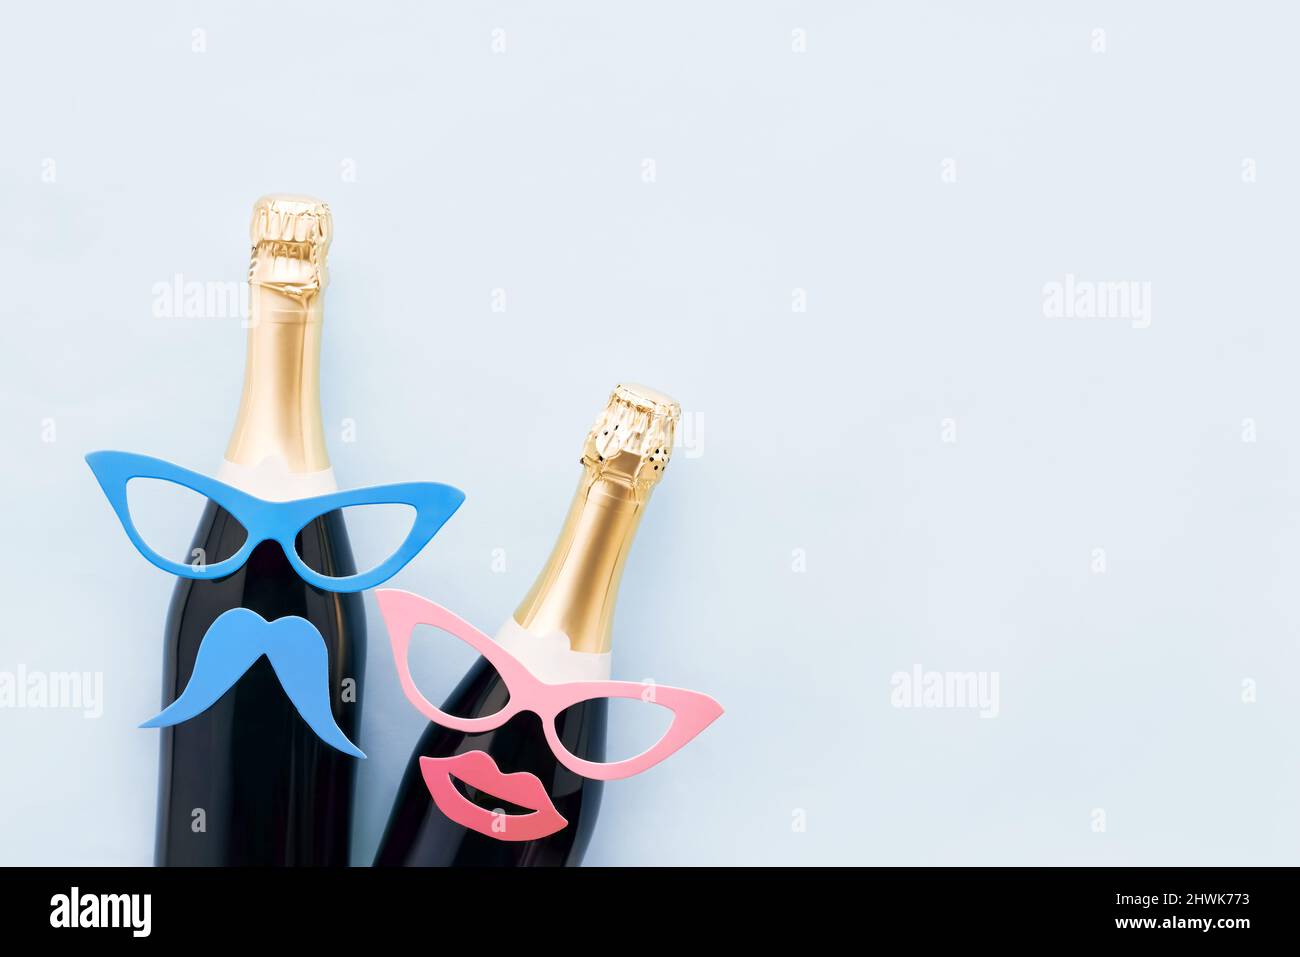 Sfondo delle vacanze con oggetti di festa, maschere e champagne su uno sfondo azzurro chiaro. Concetto di Carnevale, sfondo purim. Vista dall'alto, spazio di copia Foto Stock